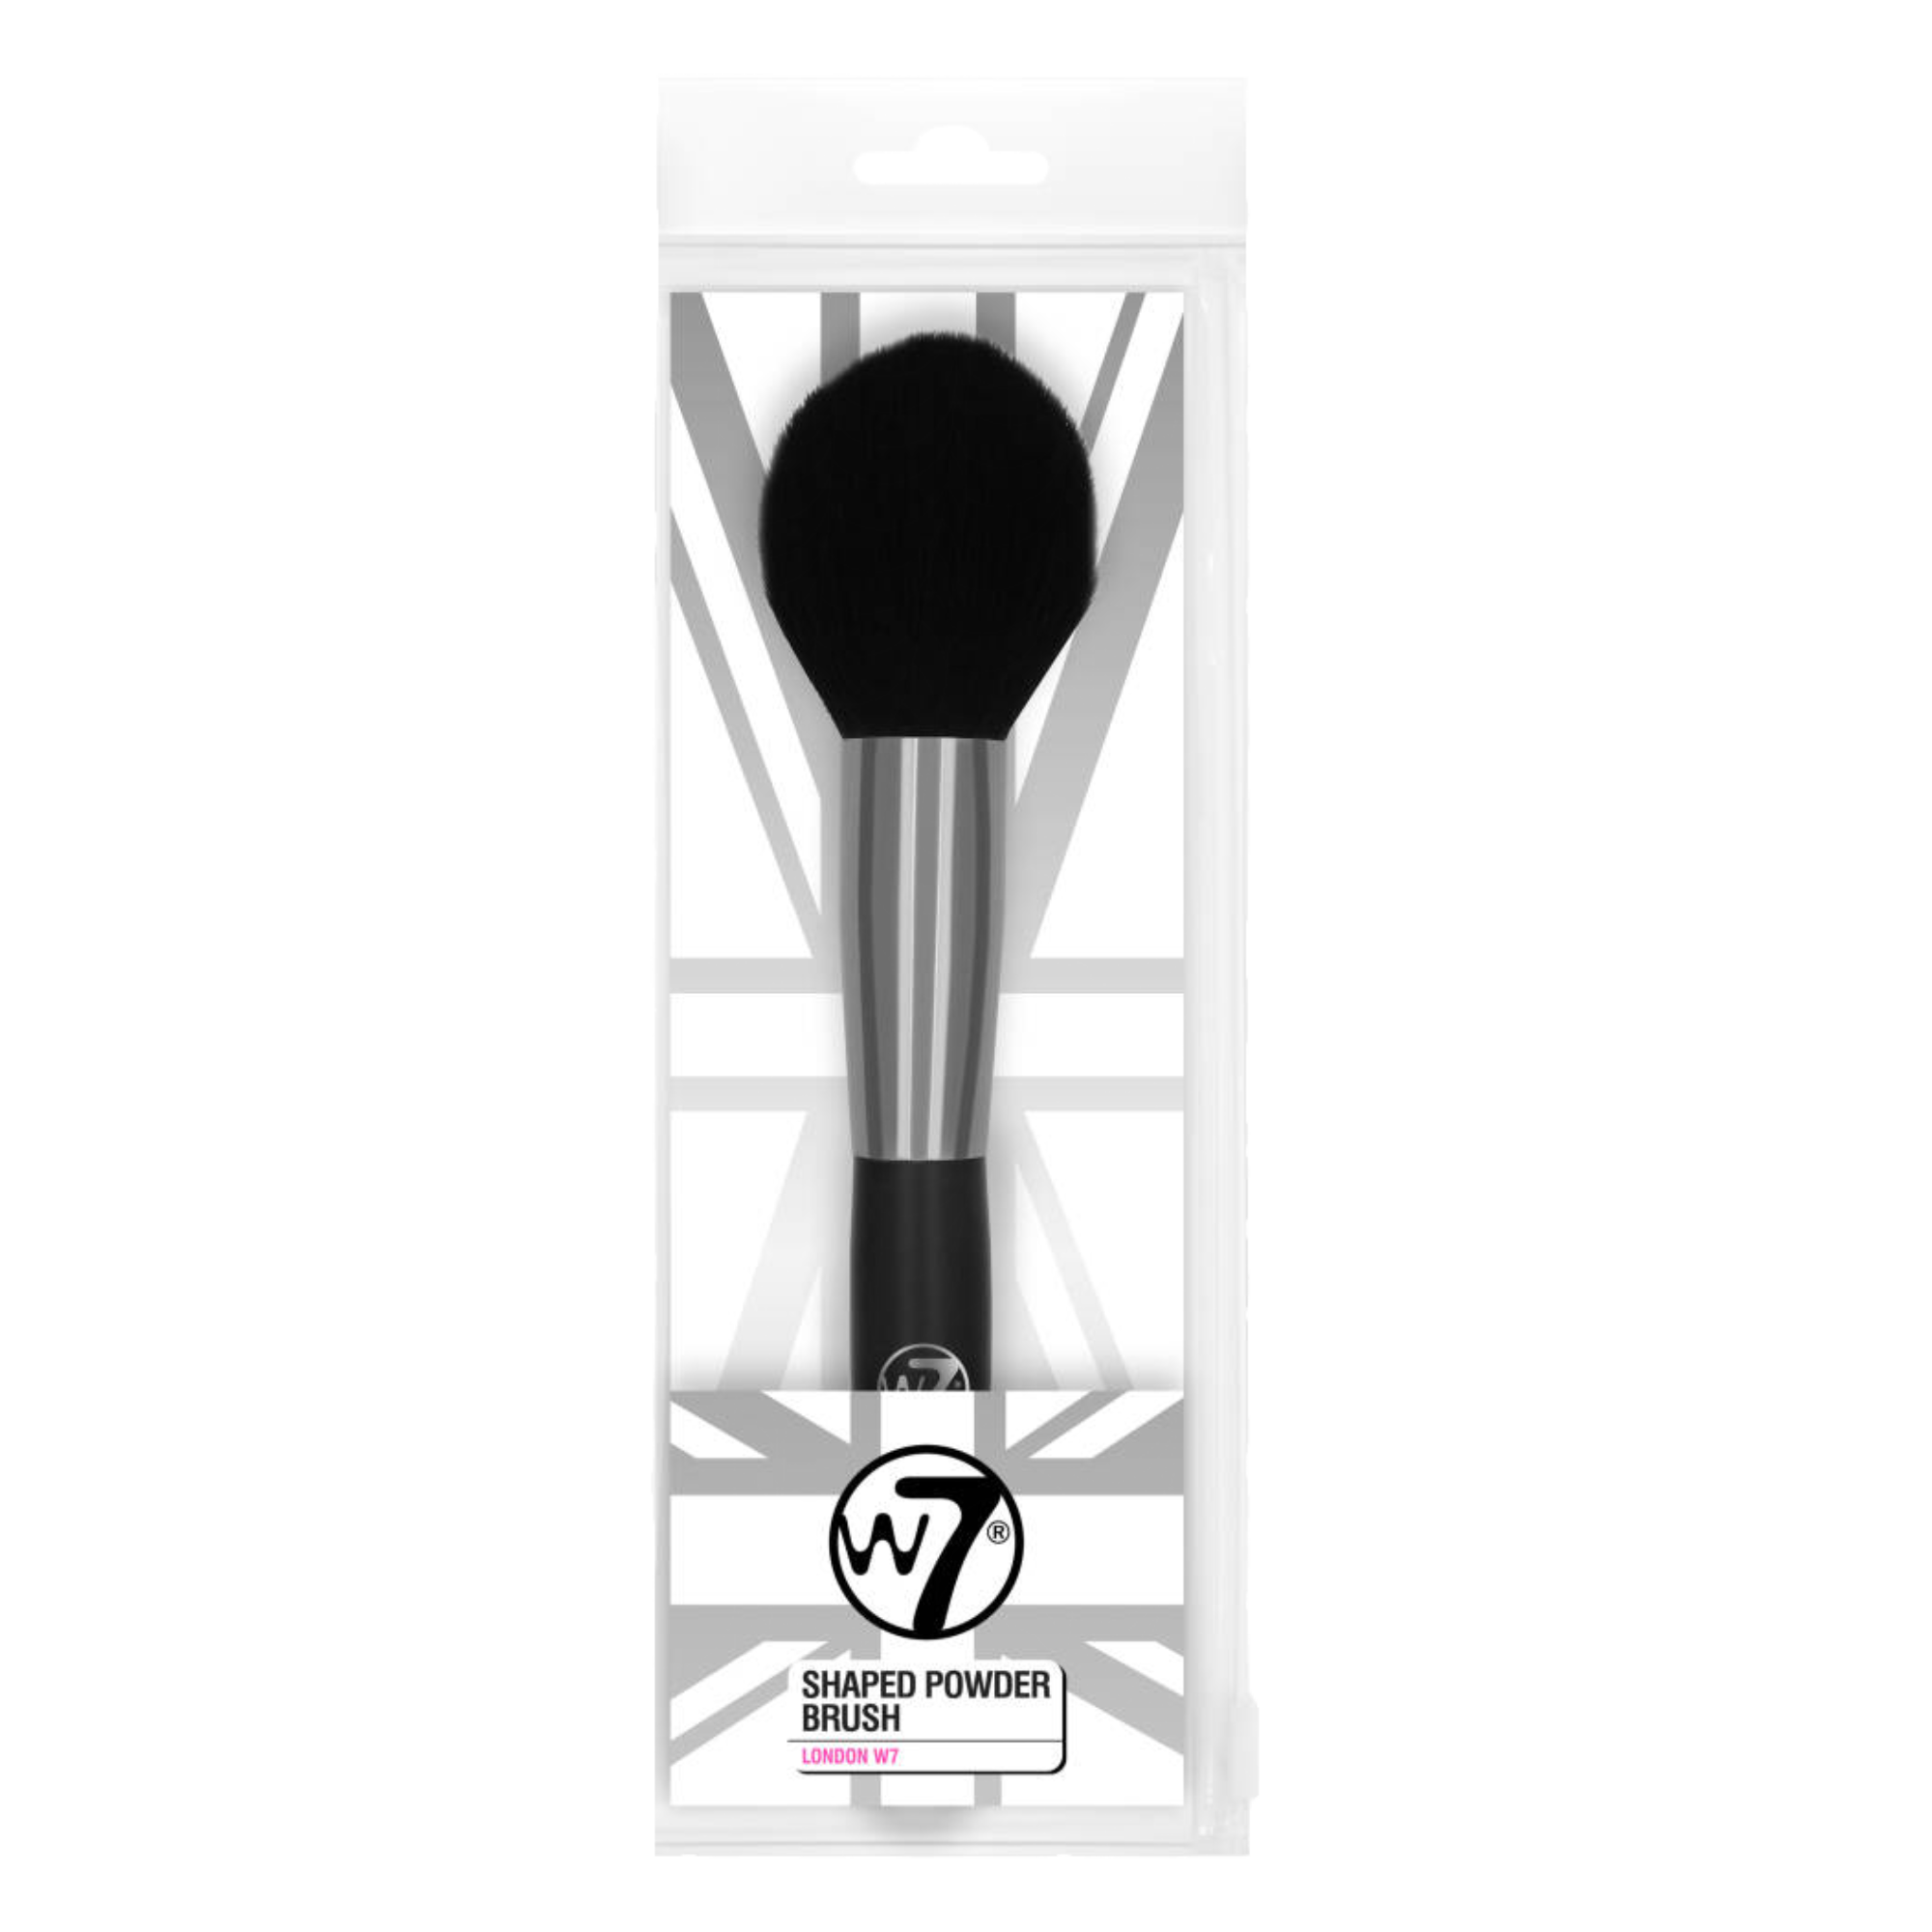 Кисточка для макияжа W7 Shaped Powder Brush, 1 шт. цена и фото